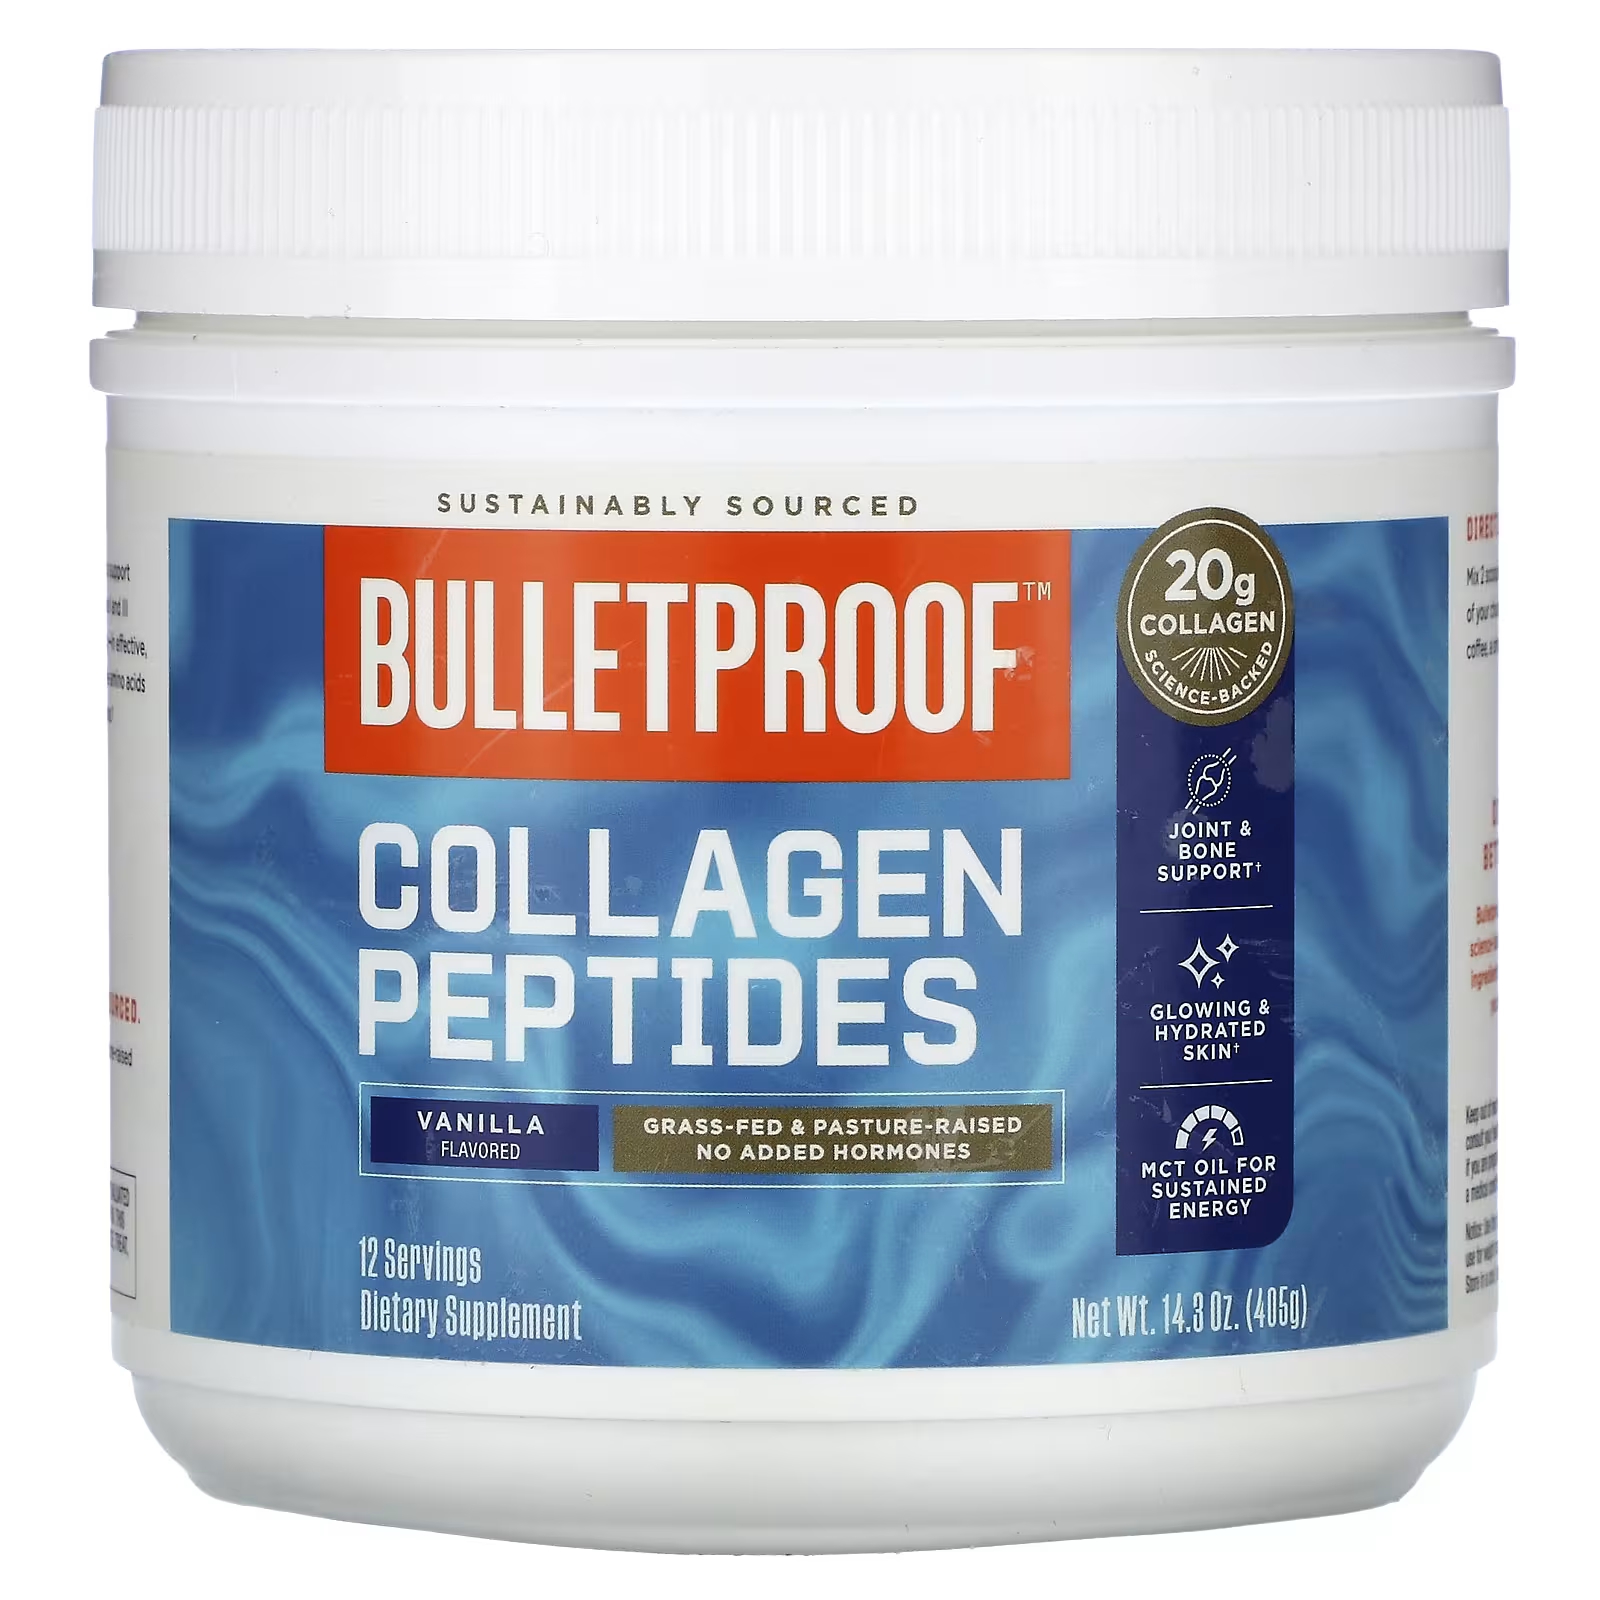 Пищевая добавка BulletProof Collagen Peptides ваниль, 405 г пищевая добавка bulletproof collagen peptides ваниль 405 г